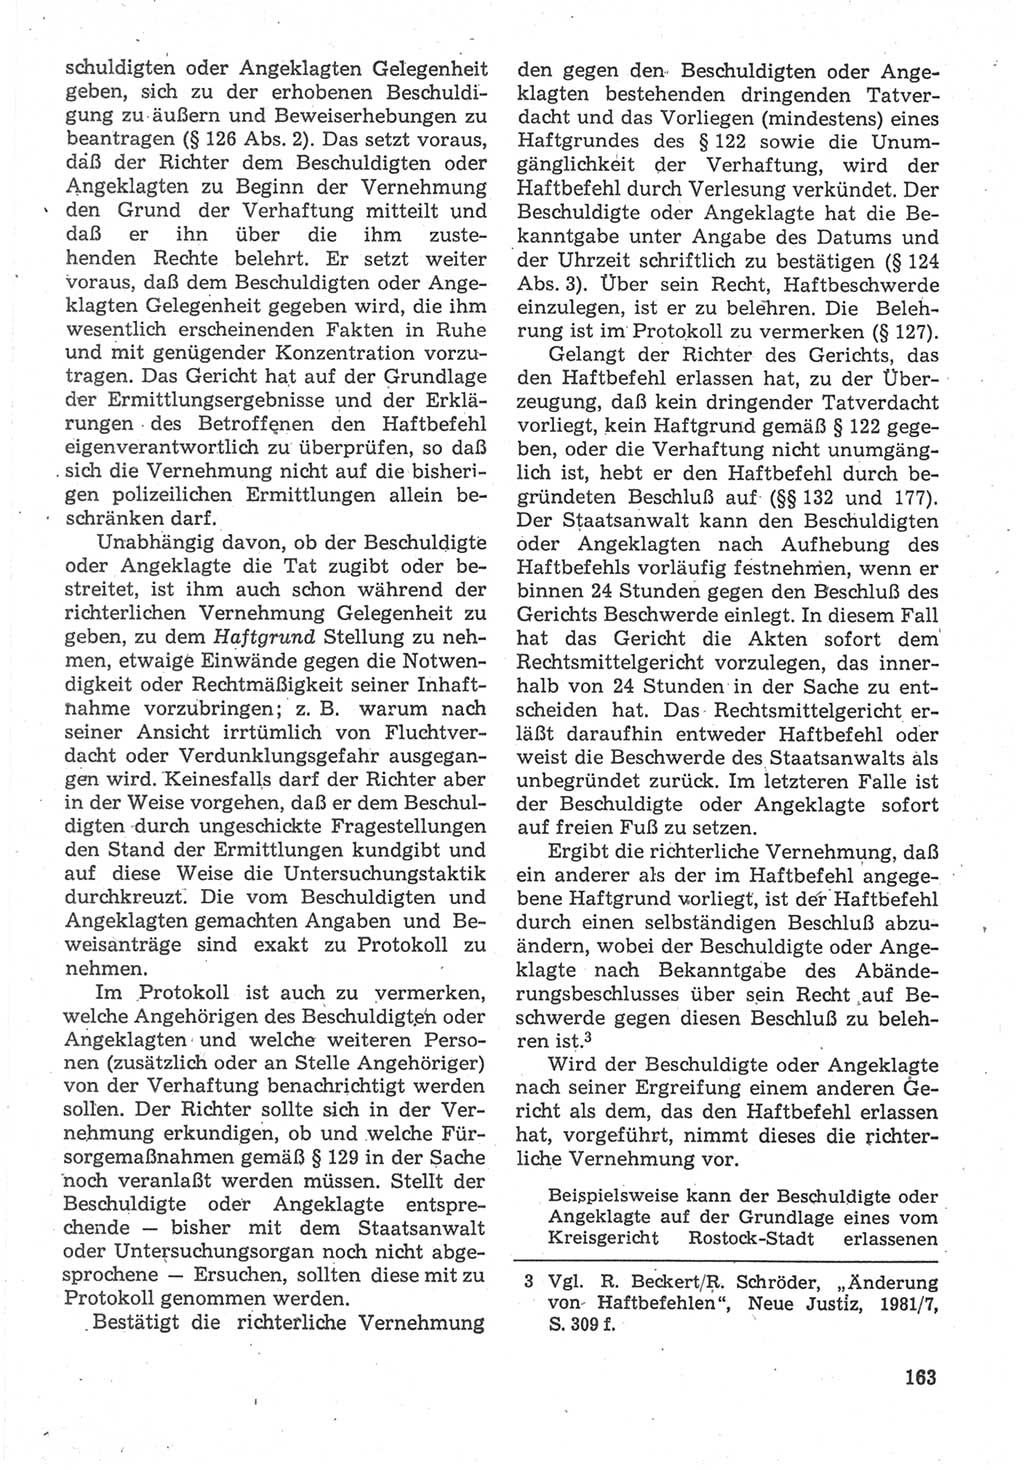 Strafverfahrensrecht [Deutsche Demokratische Republik (DDR)], Lehrbuch 1987, Seite 163 (Strafverf.-R. DDR Lb. 1987, S. 163)